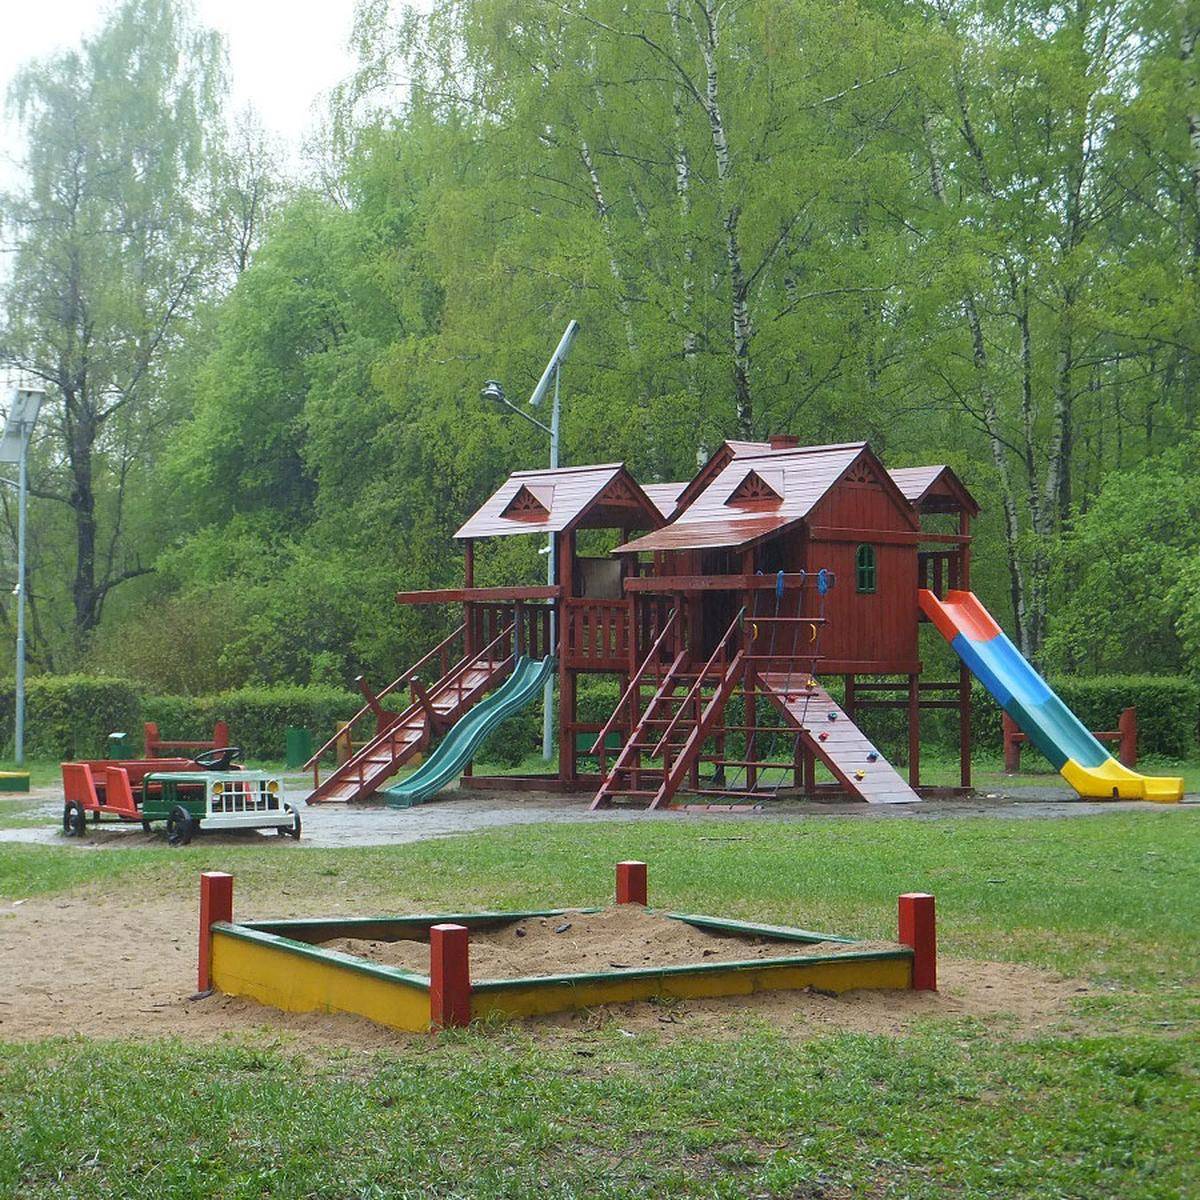 Фото: Детская игровая площадка №3, парк «Кузьминки-Люблино».